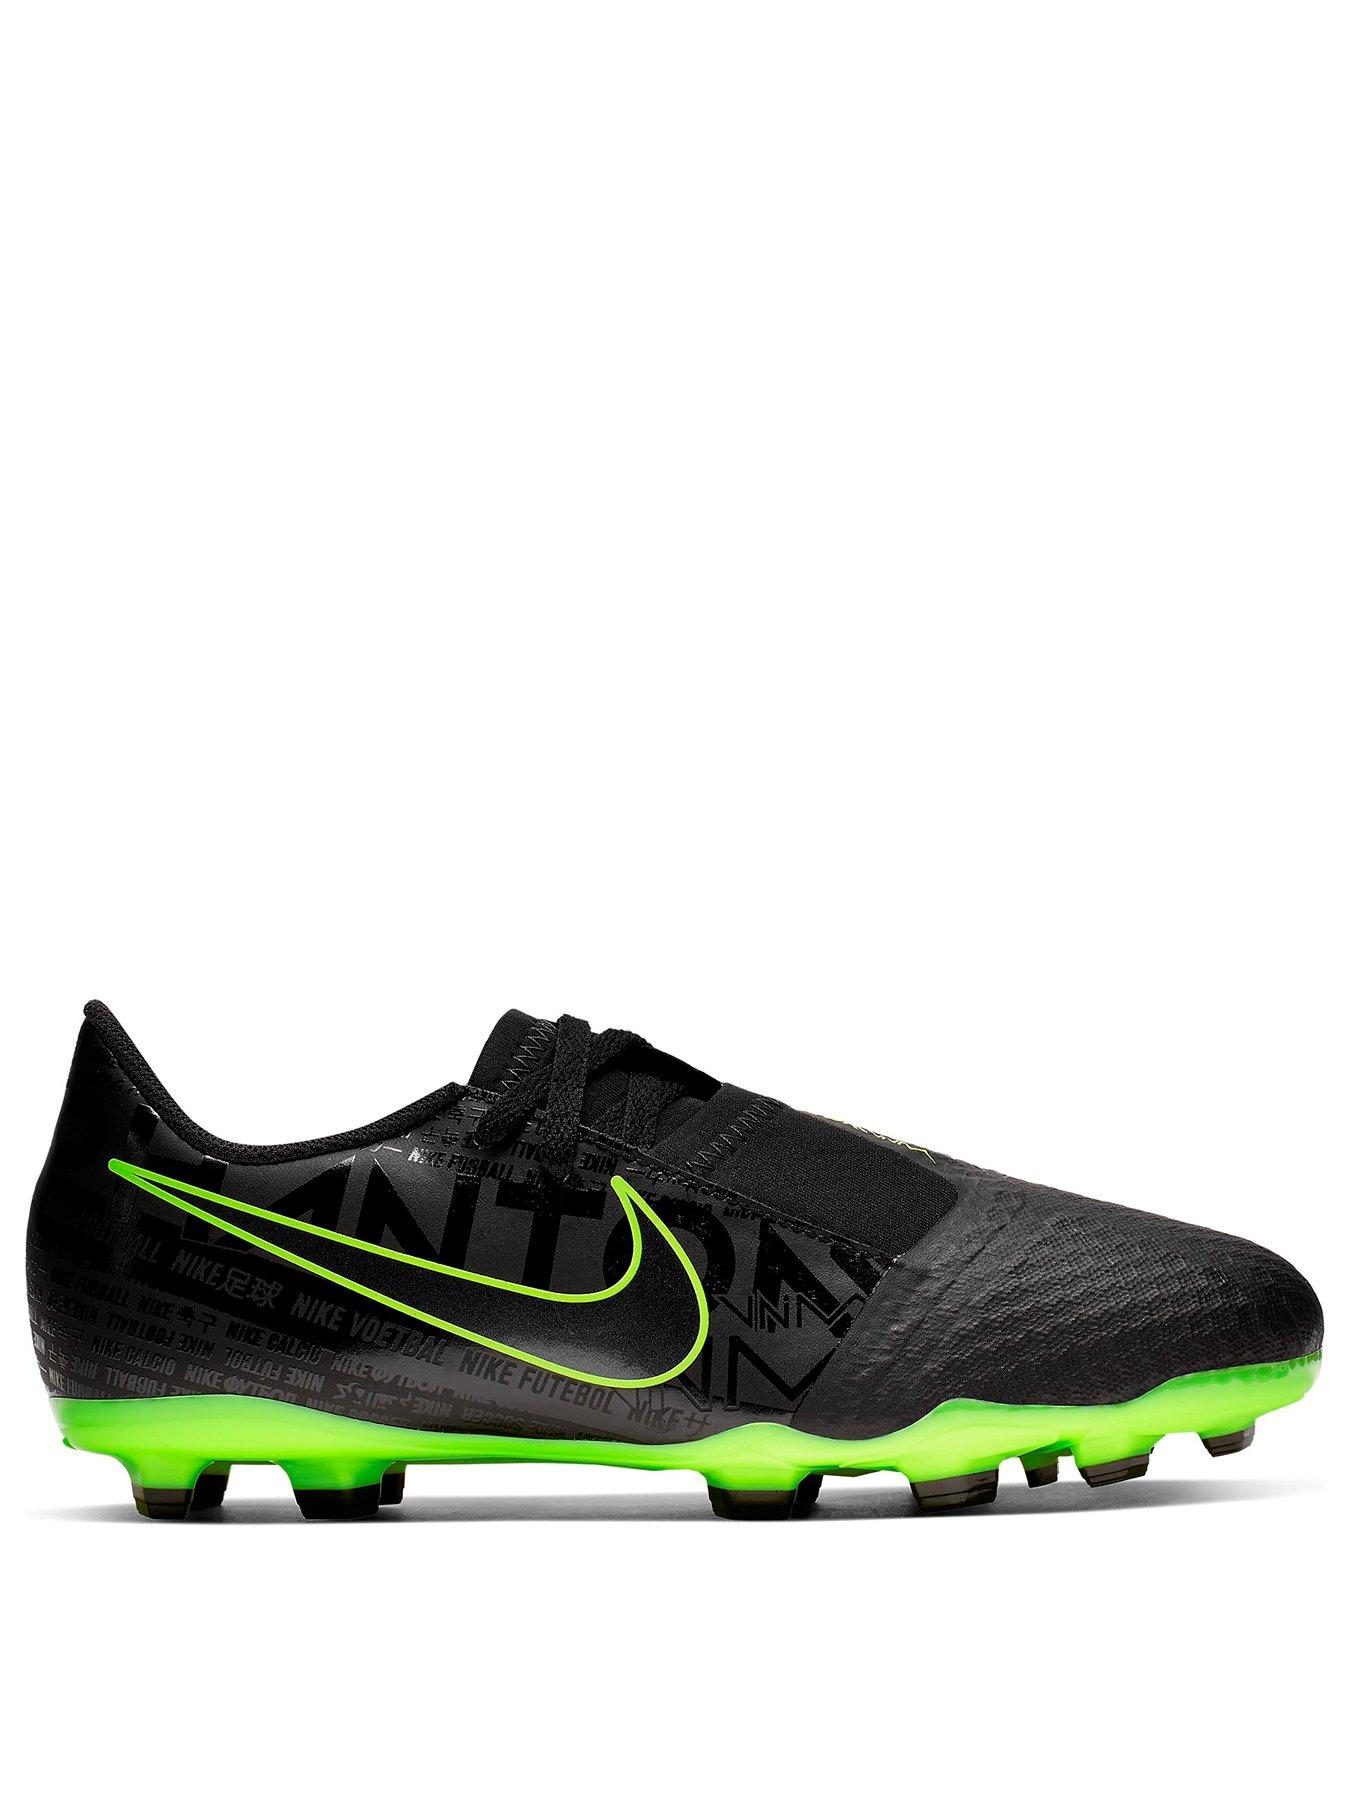 Nike Hypervenom Phantom FG Soccer Cleats Neon eBay